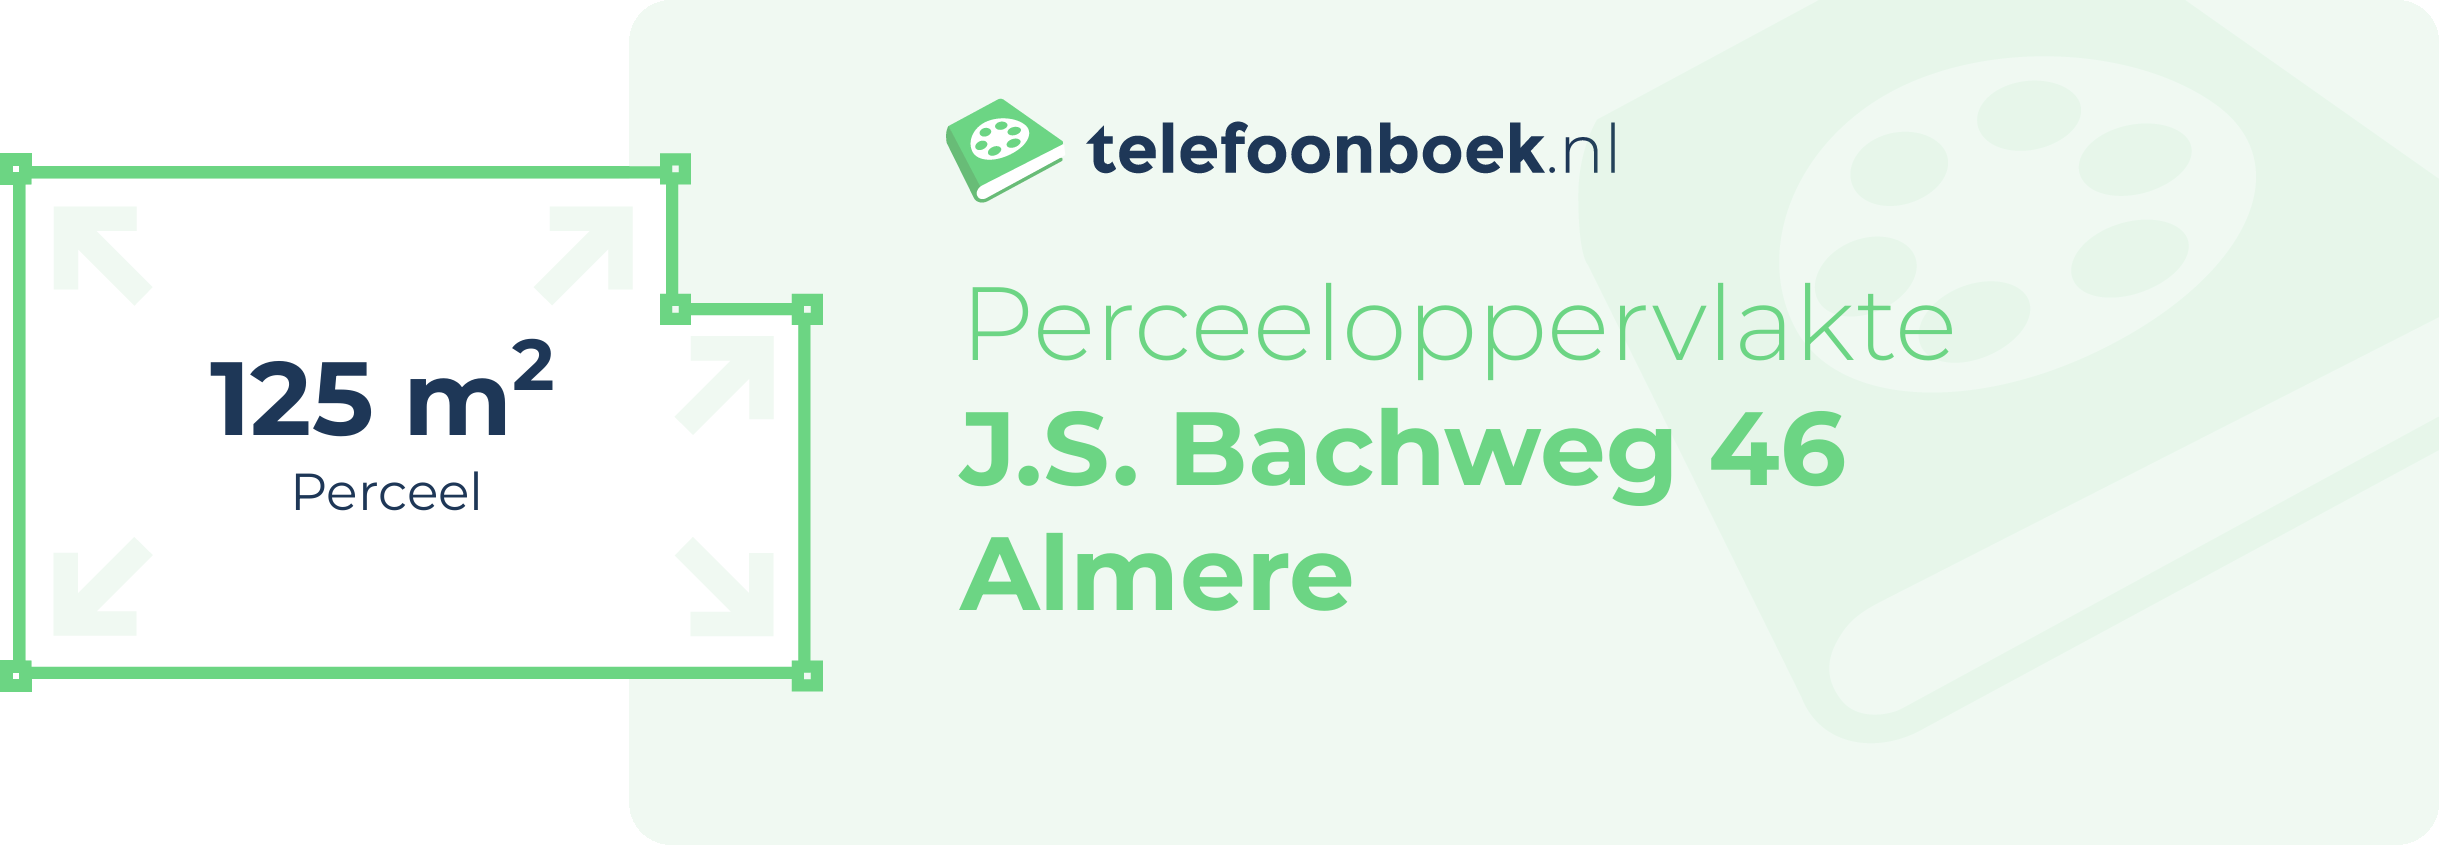 Perceeloppervlakte J.S. Bachweg 46 Almere